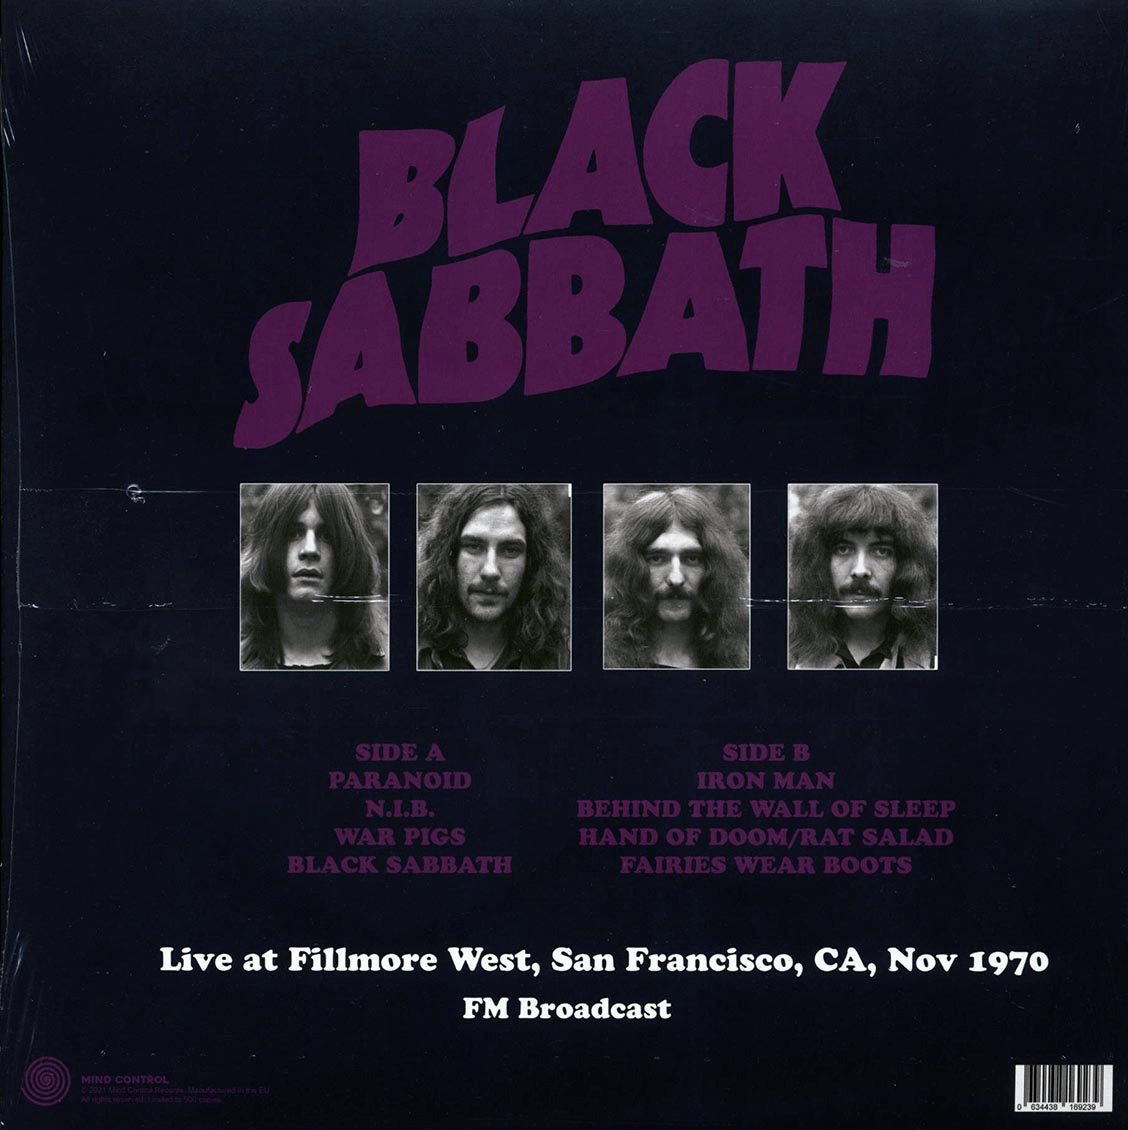 BLACK SABBATH: Live at Fillmore West, San Francisco CA, Nov 1970 - FM Broadcast LP